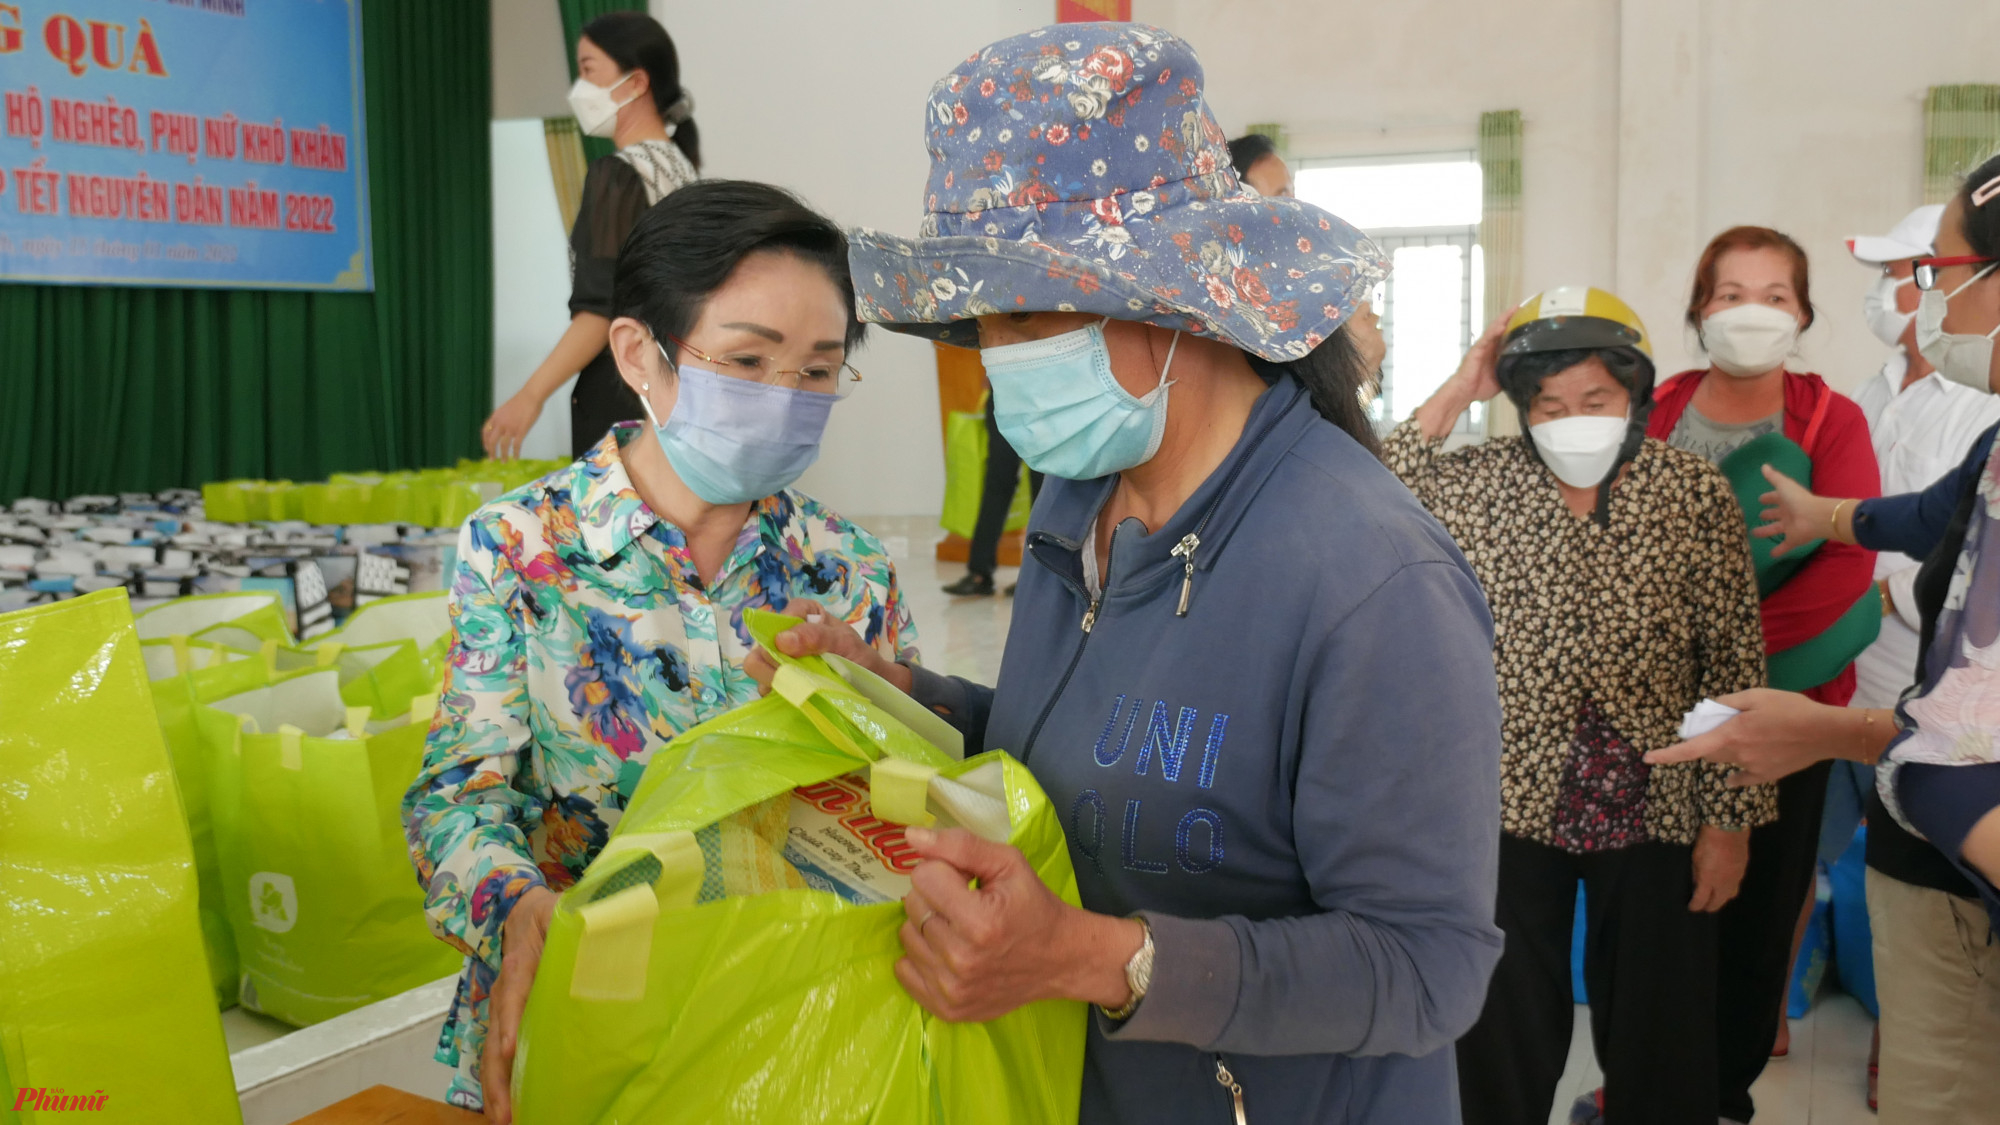 PGS-TS. Trương Thị Hiền, Chủ tịch Hội Nữ trí thức TPHCM tặng quà cho phụ nữ khó khăn huyện Cần Giờ